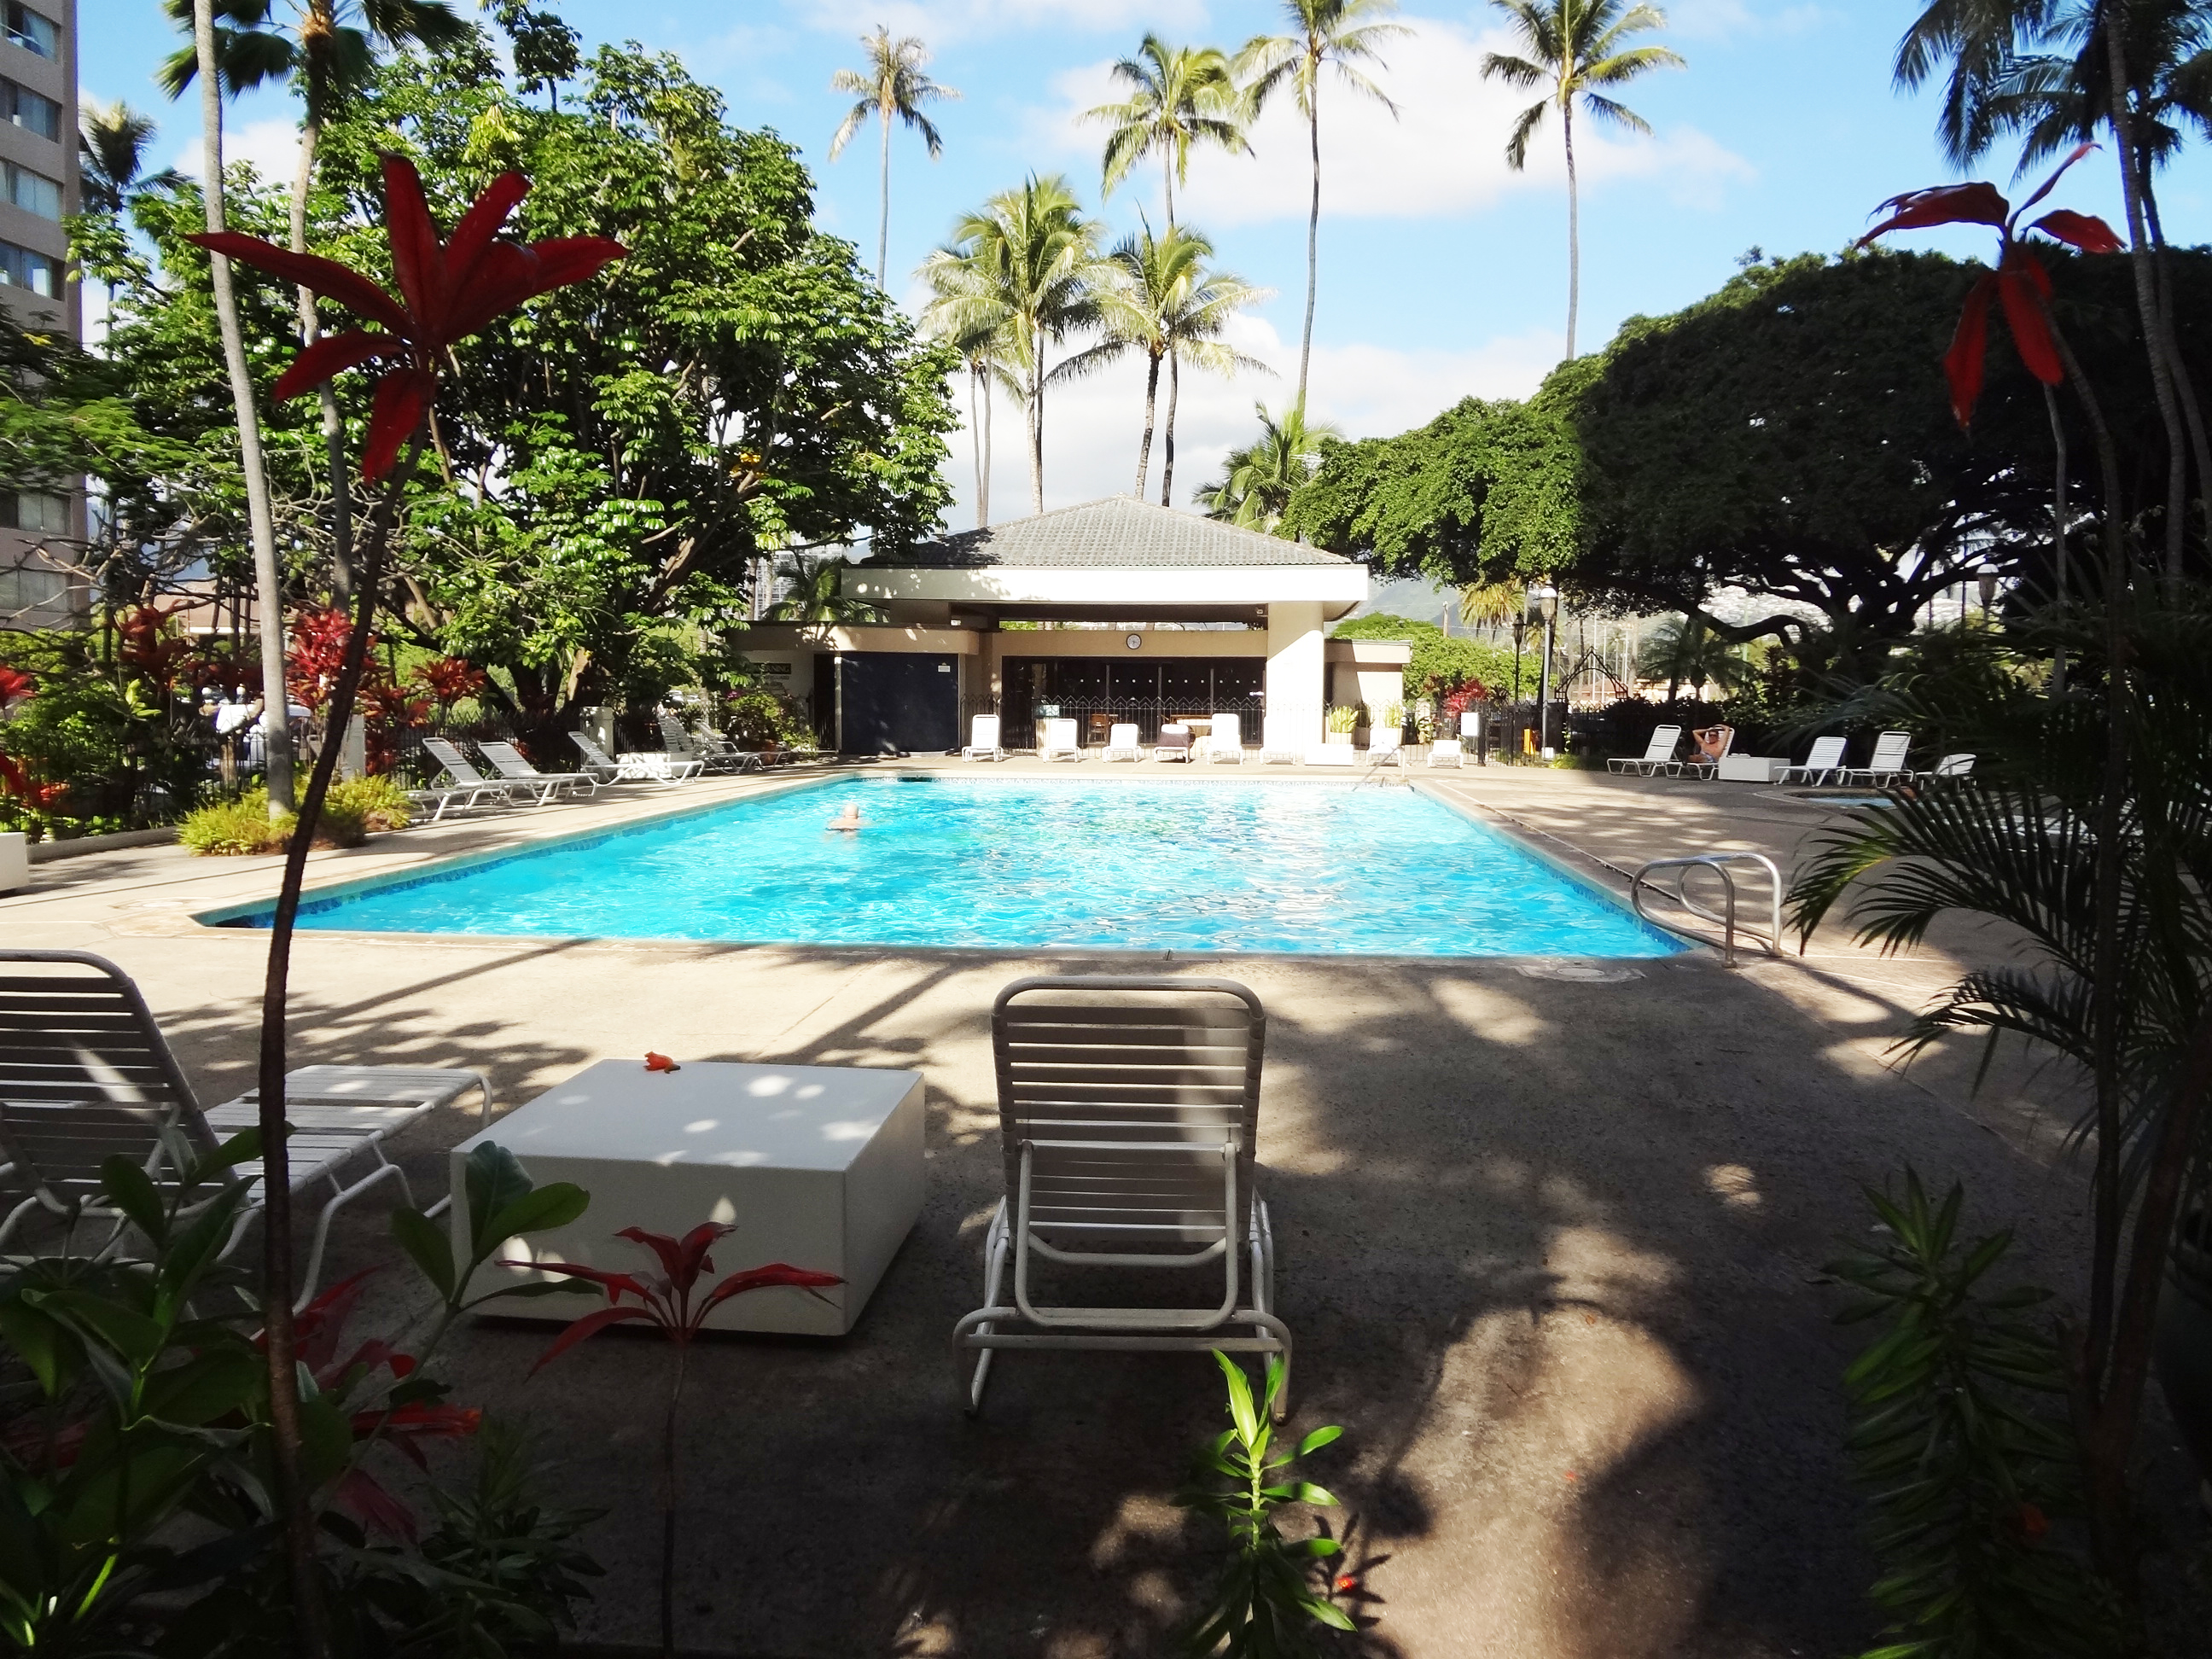 Liliuokalani Gardens Pool and spa